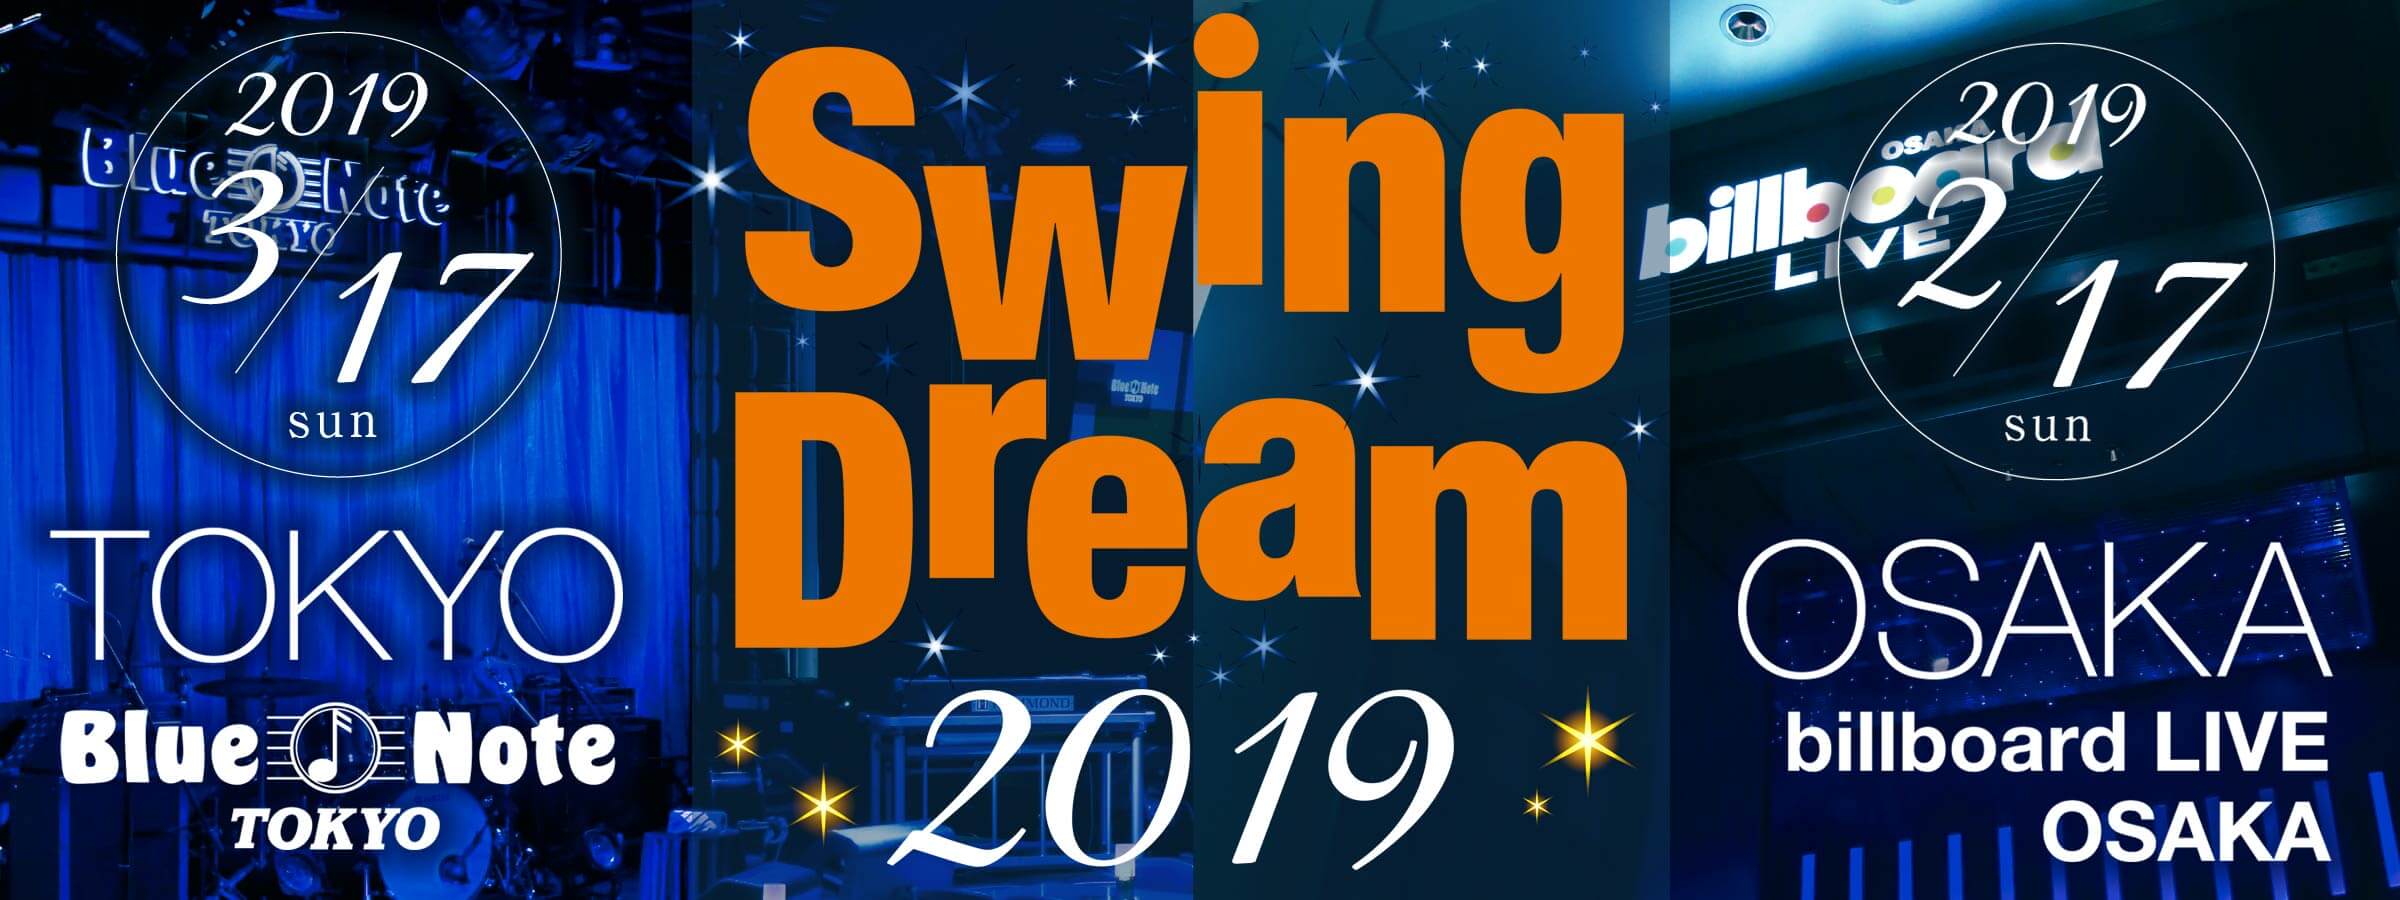 *ジャズ界名門のステージを楽しむ贅沢な一日「Swing Dream」 「Swing Dream」とは、島村楽器の音楽教室会員の皆様が出演するジャズライブコンサートです。]]2019年は東京と大阪の2会場で開催致します！]]全国の島村楽器から参加する100組以上のグループが、プロミュージシャンをバック […]